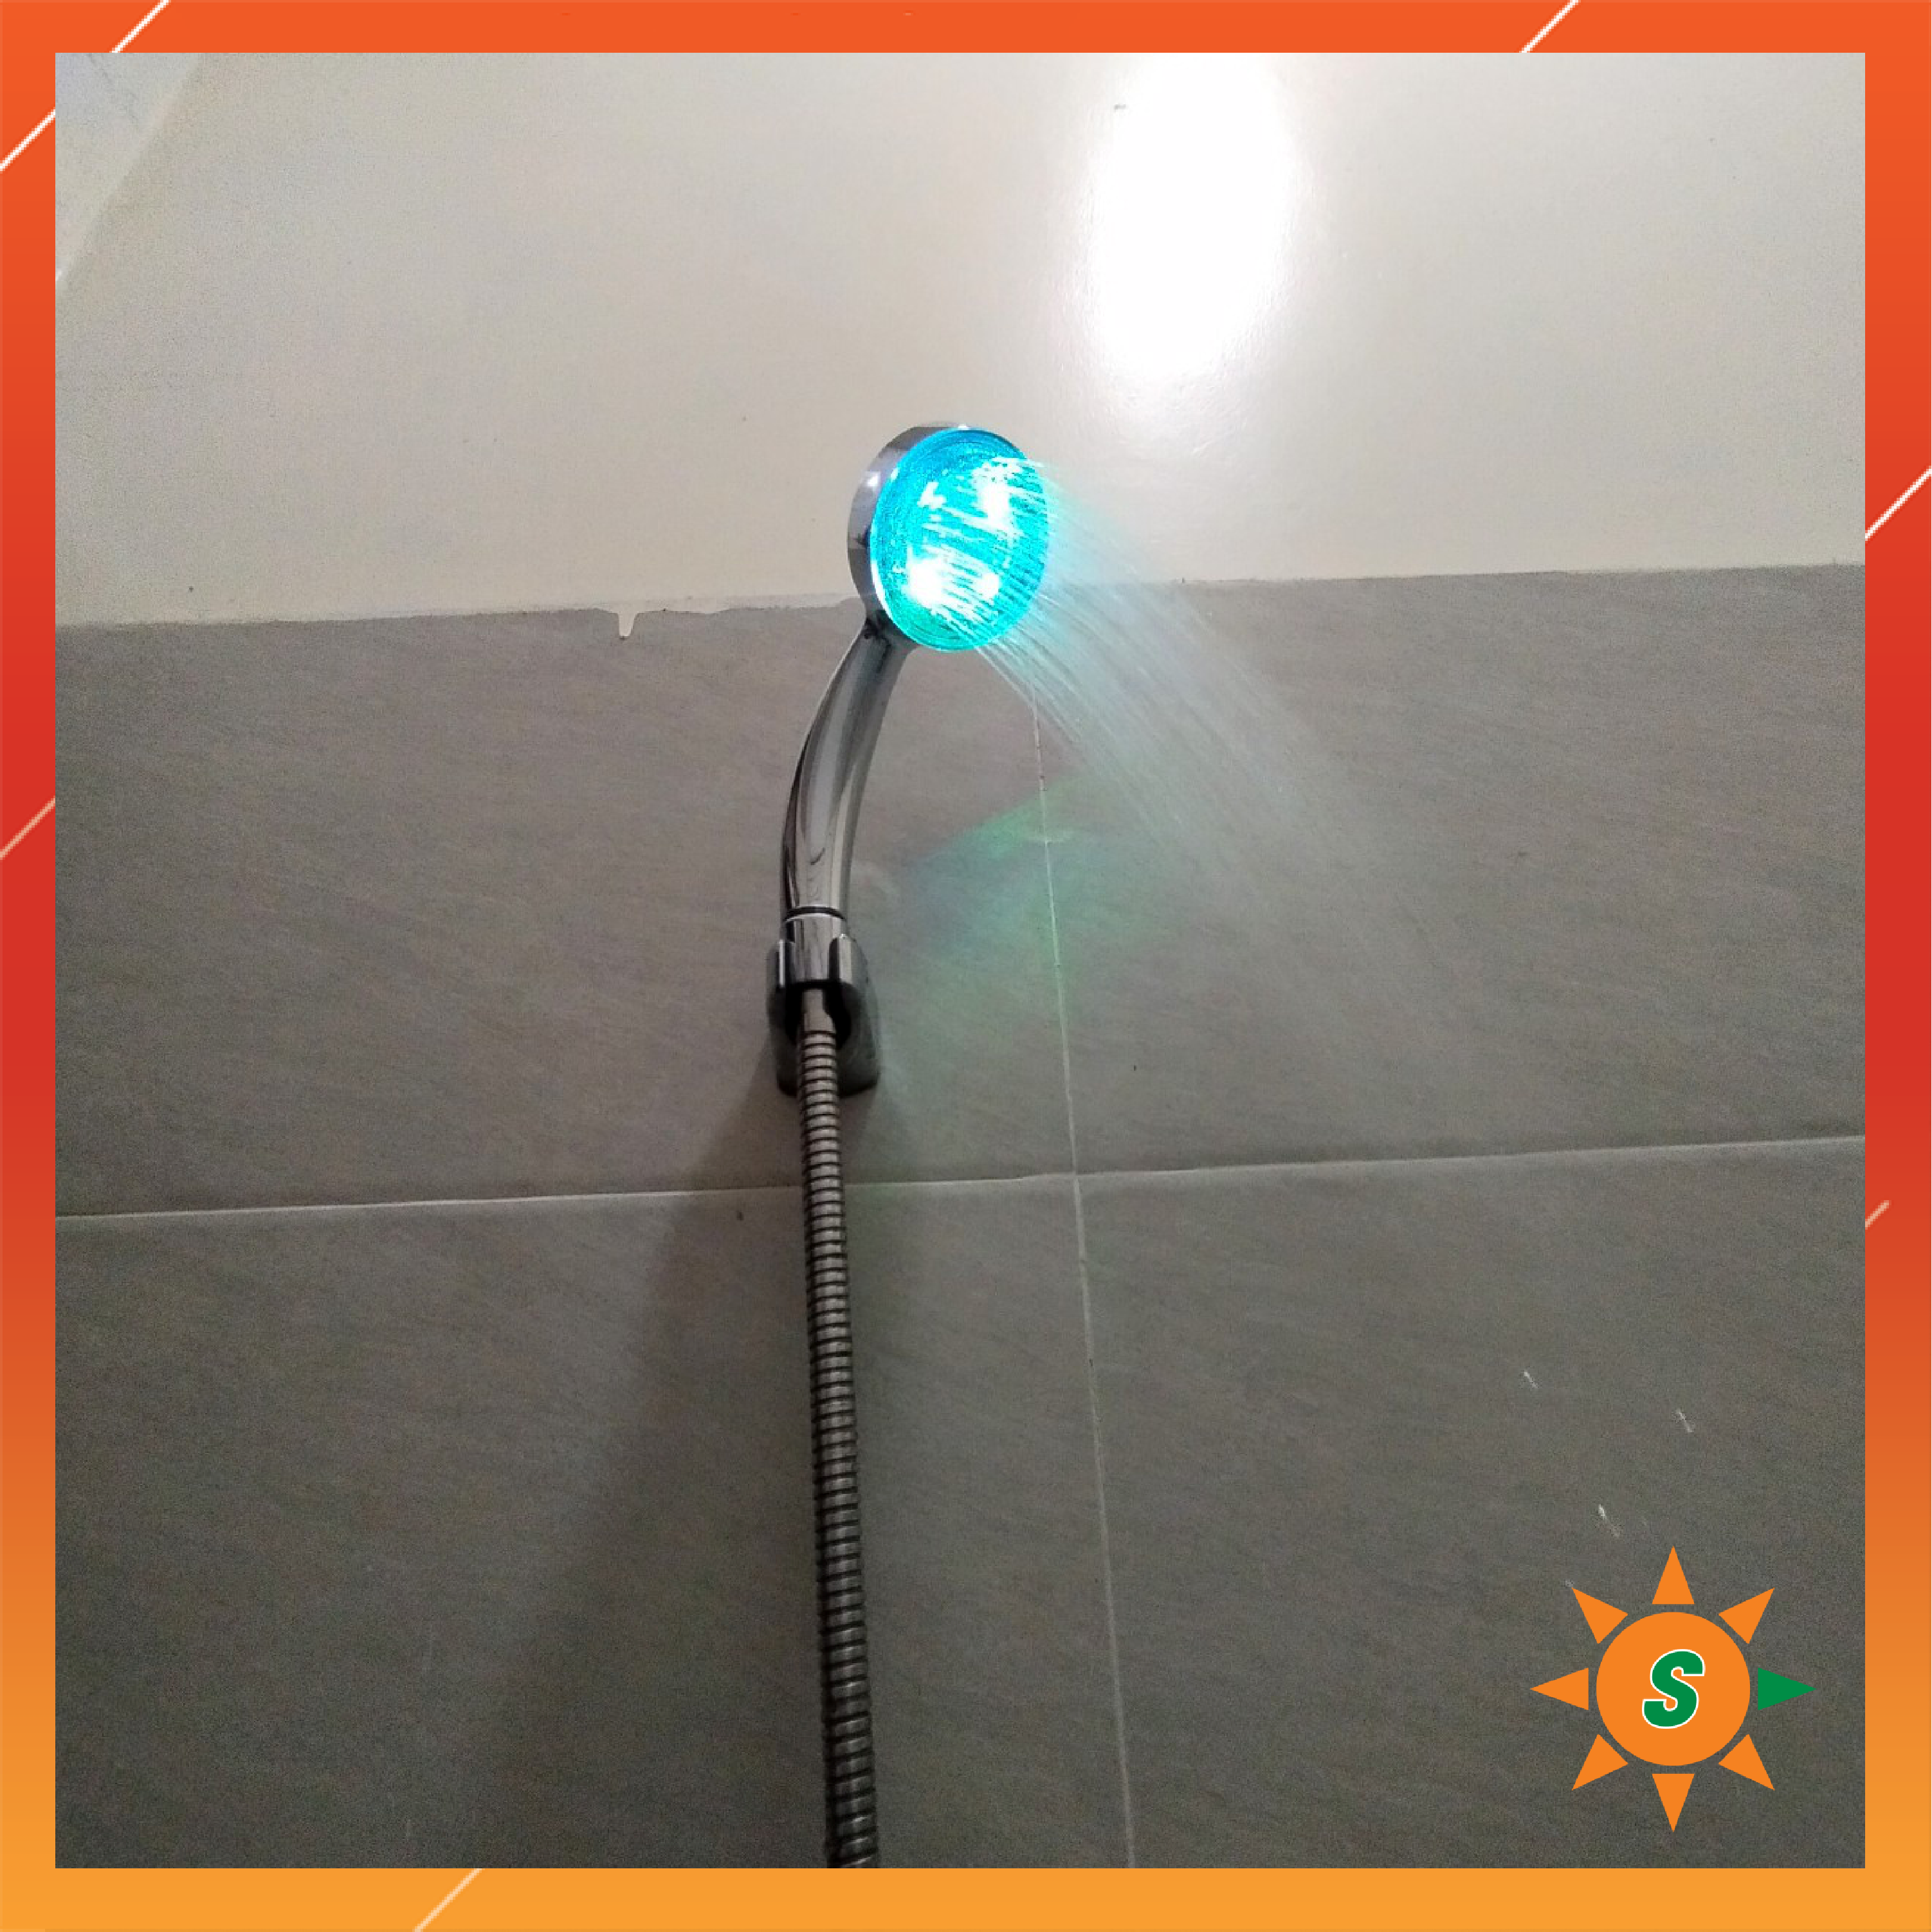 Vòi tắm sen tròn tăng áp lực nước, có đèn tự động sáng đủ màu không cần pin